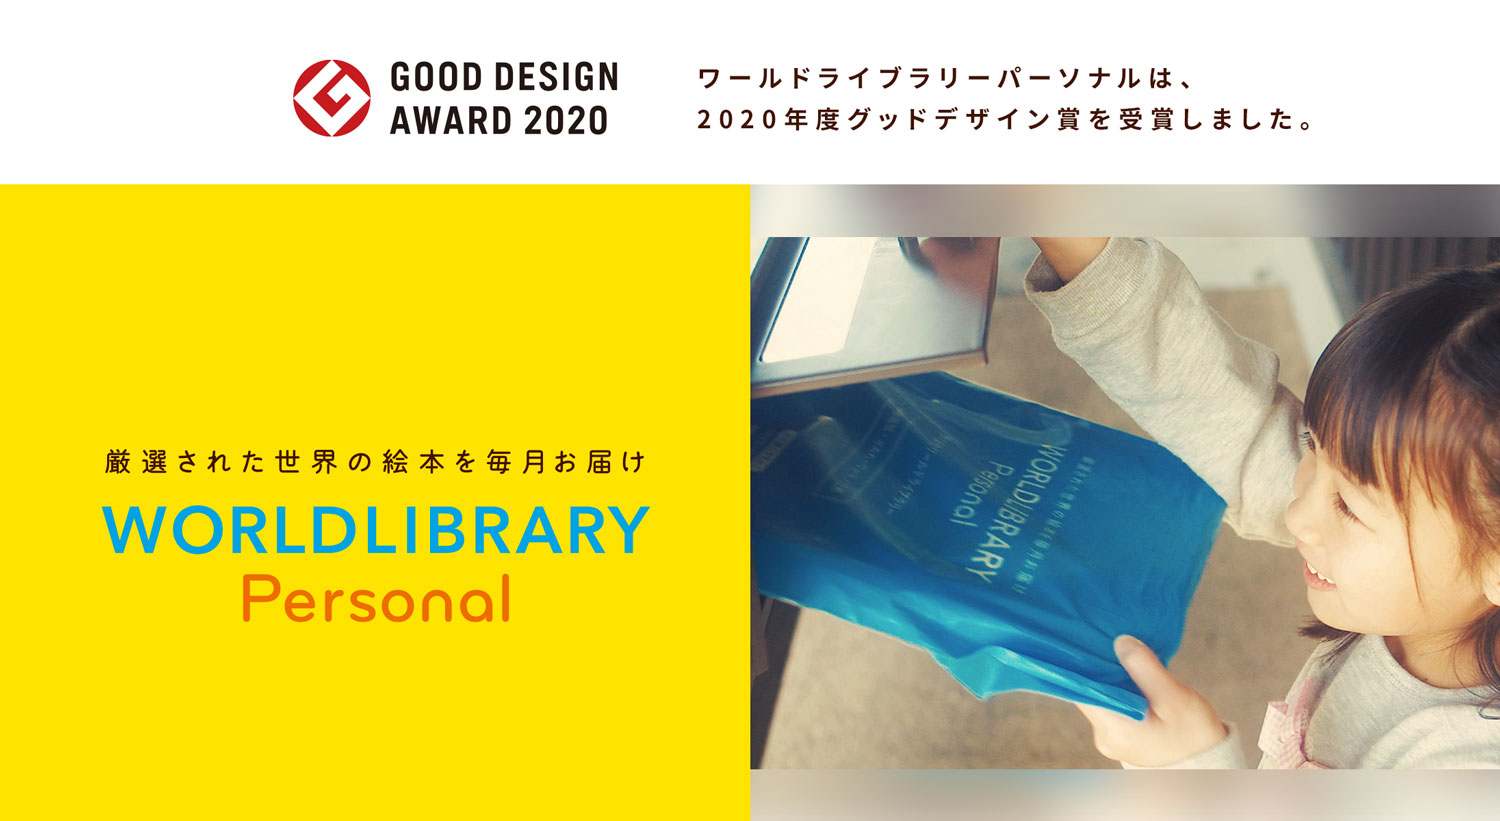 ワールドライブラリーパーソナルは、 2020年度グッドデザイン賞を受賞しました。